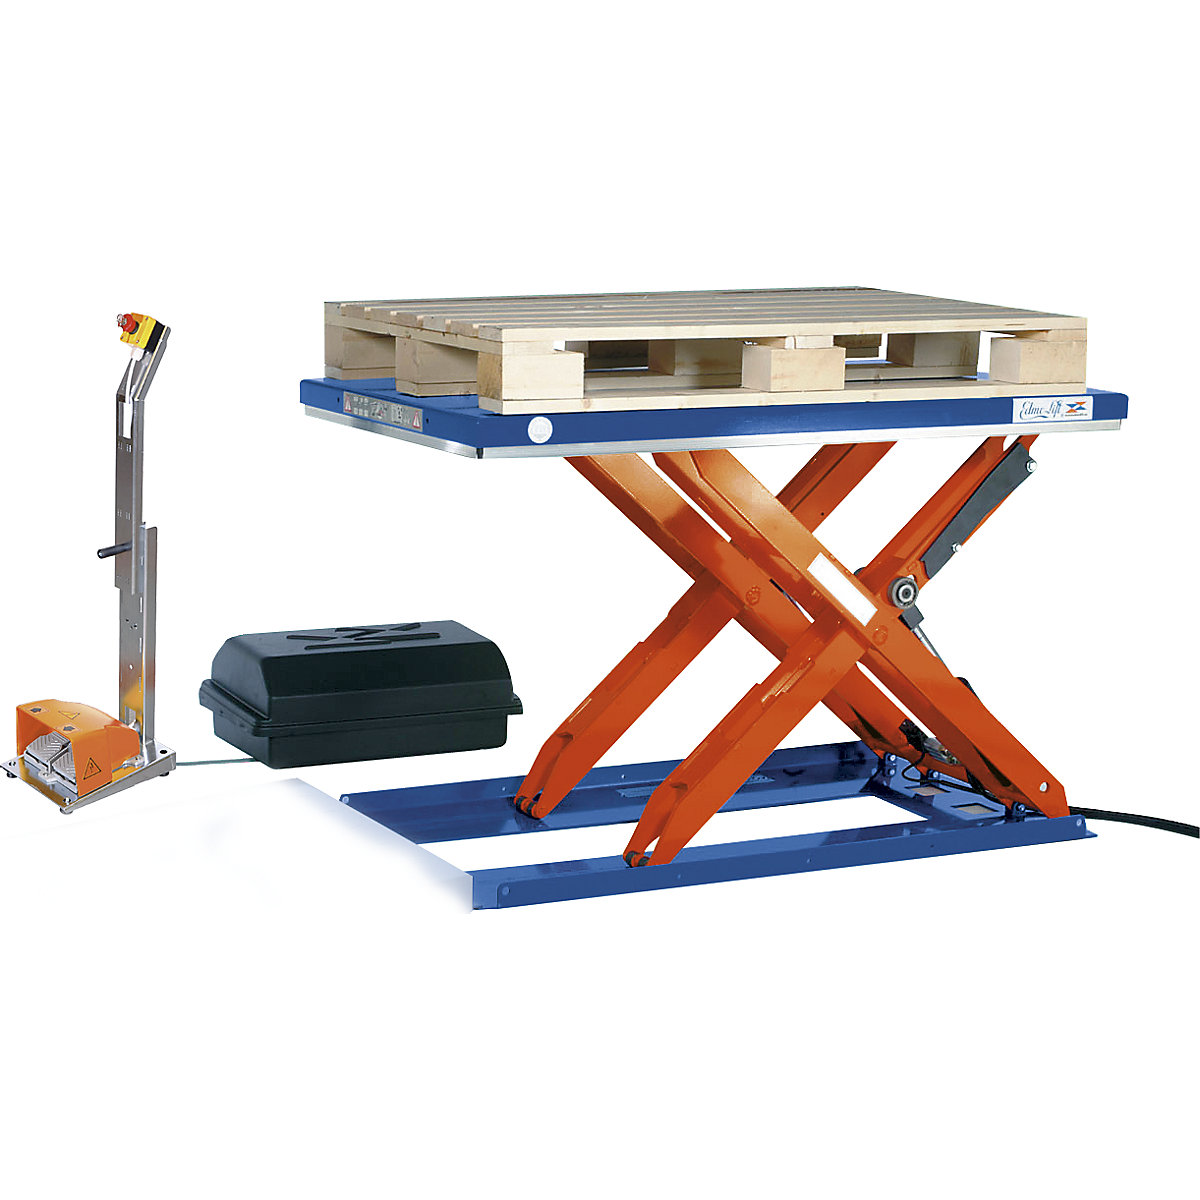 Plosnati podizni stol – Edmolift, DxŠ 1500 x 800 mm, područje podizanja do 800 mm, zatvorena platforma, 400 V, nožni element za rukovanje-5